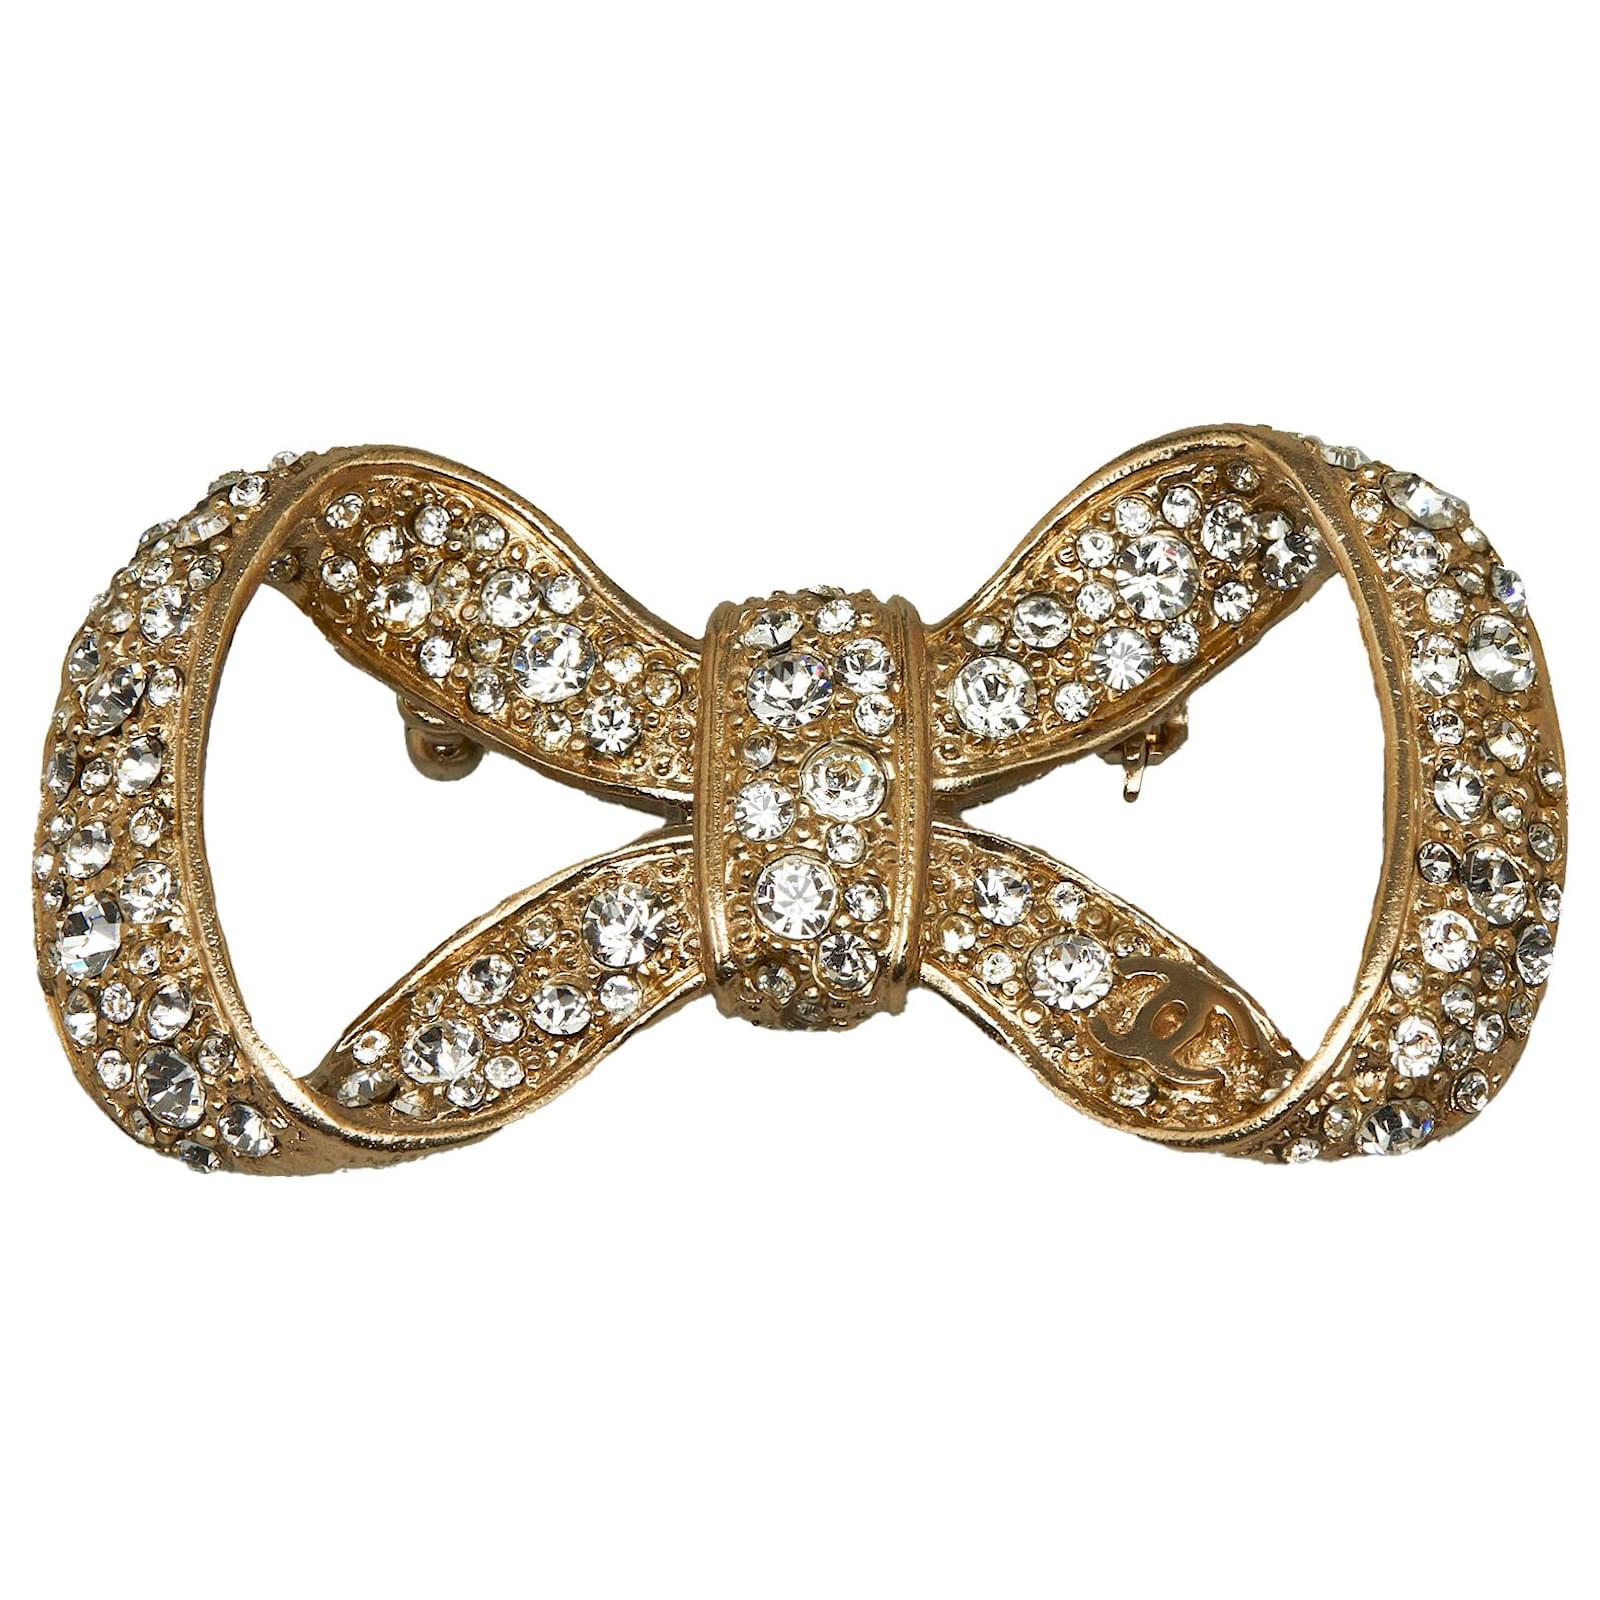 Chanel Silver Crystal Bow Brooch